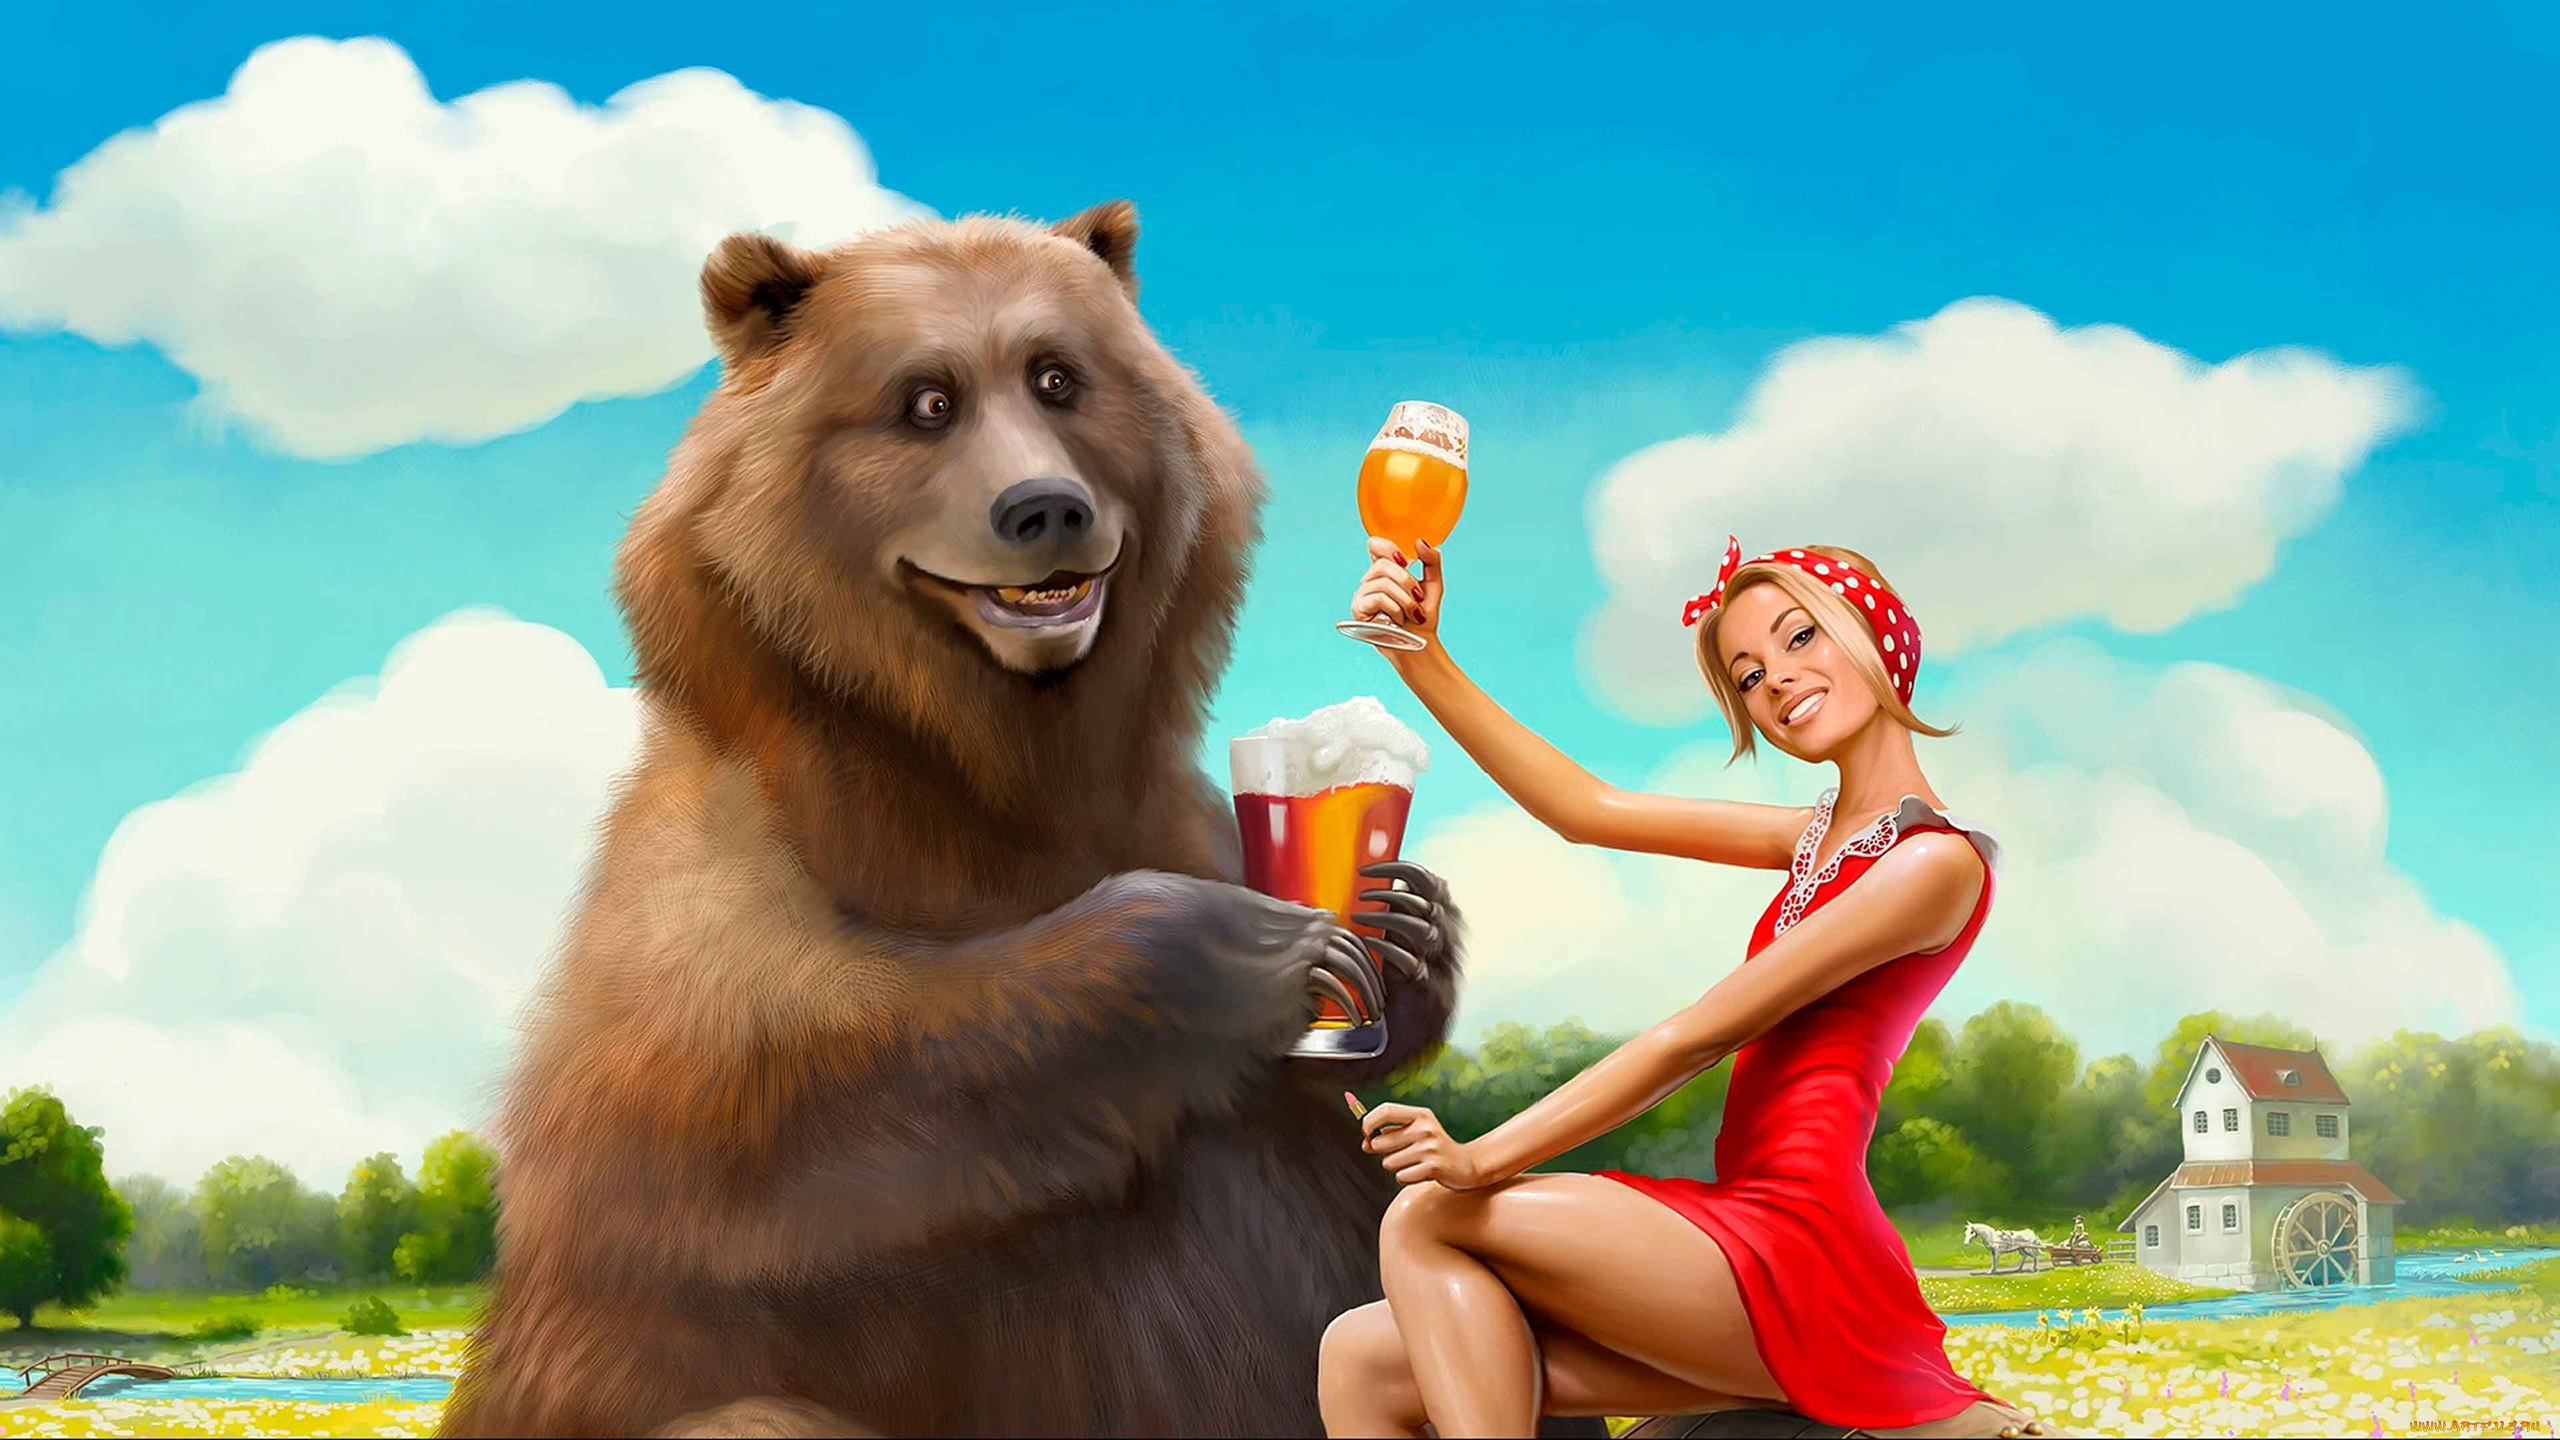 юмор, и, приколы, девушка, медведь, пиво, маша, красный, кружка, юмор, прикол, животное, блондинка, улыбка